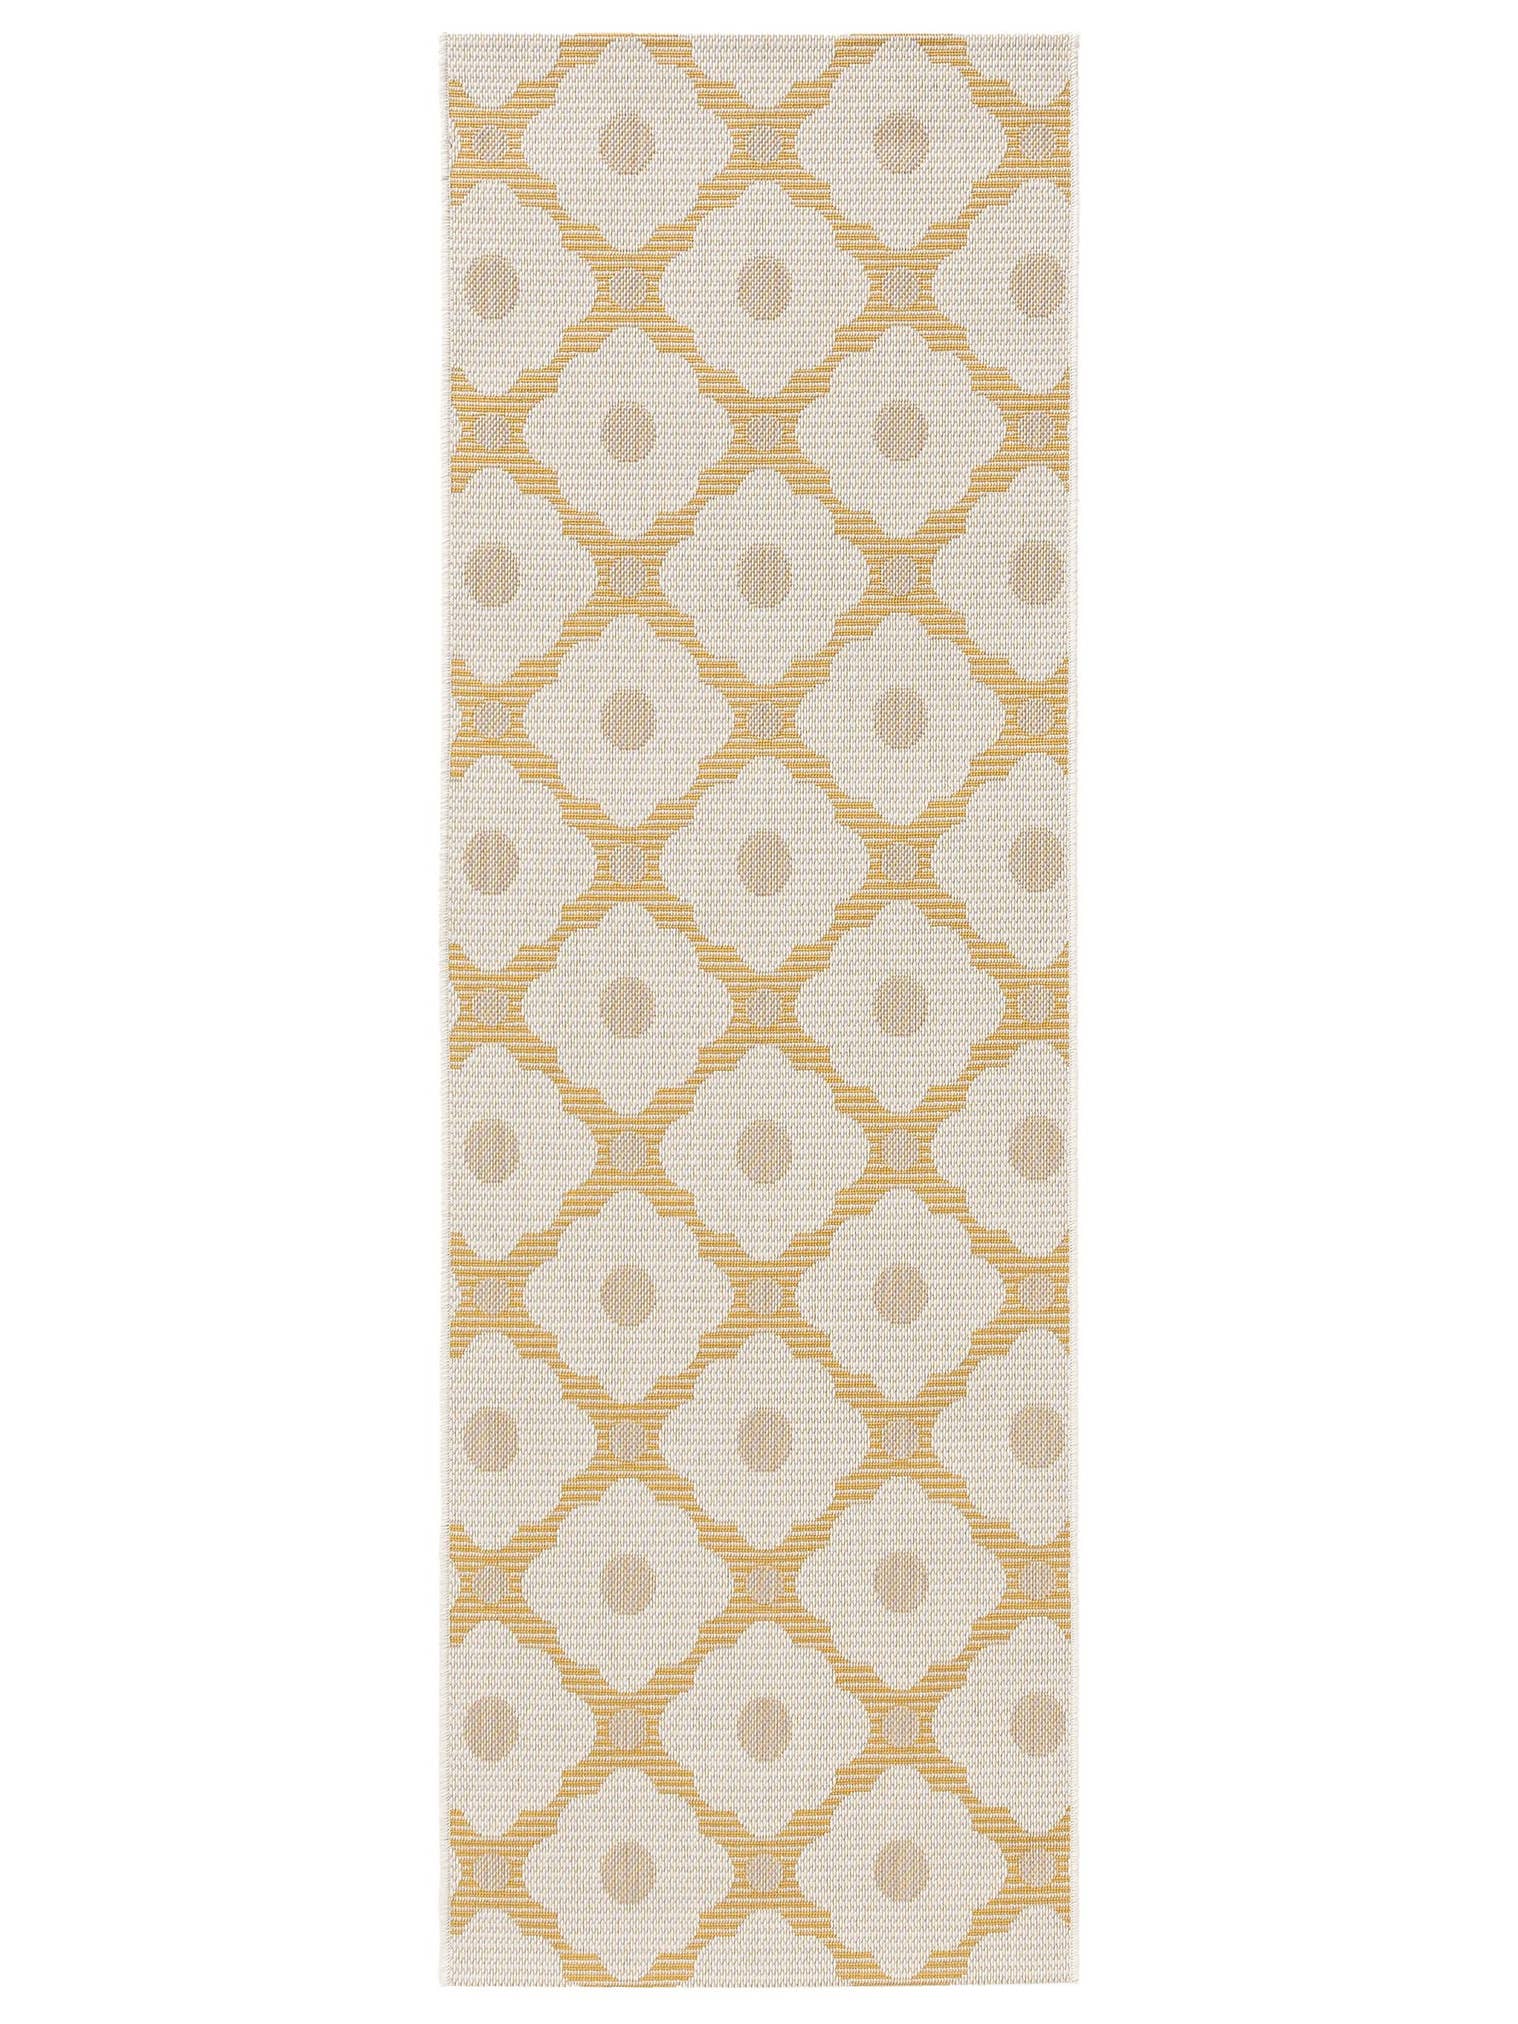 Teppich aus 100% Polyester (recyceltes PET) in Gelb mit bis 5 mm hohem Flor von benuta Nest